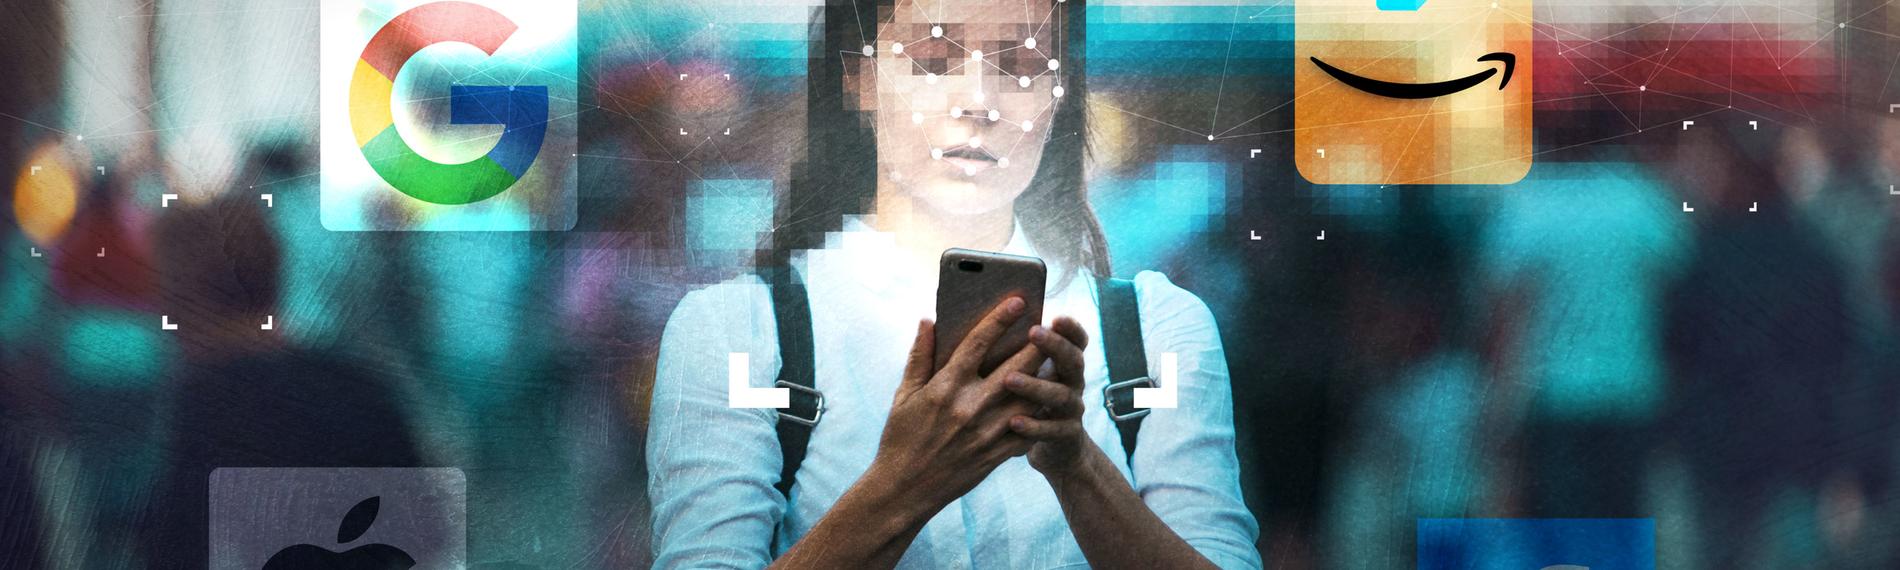 Computergrafik: Eine junge Frau hält ihr Smartphone in der Hand, um sie herum sind mehrere Apps von Google, Amazon, Facebook und Apple abgebildet.